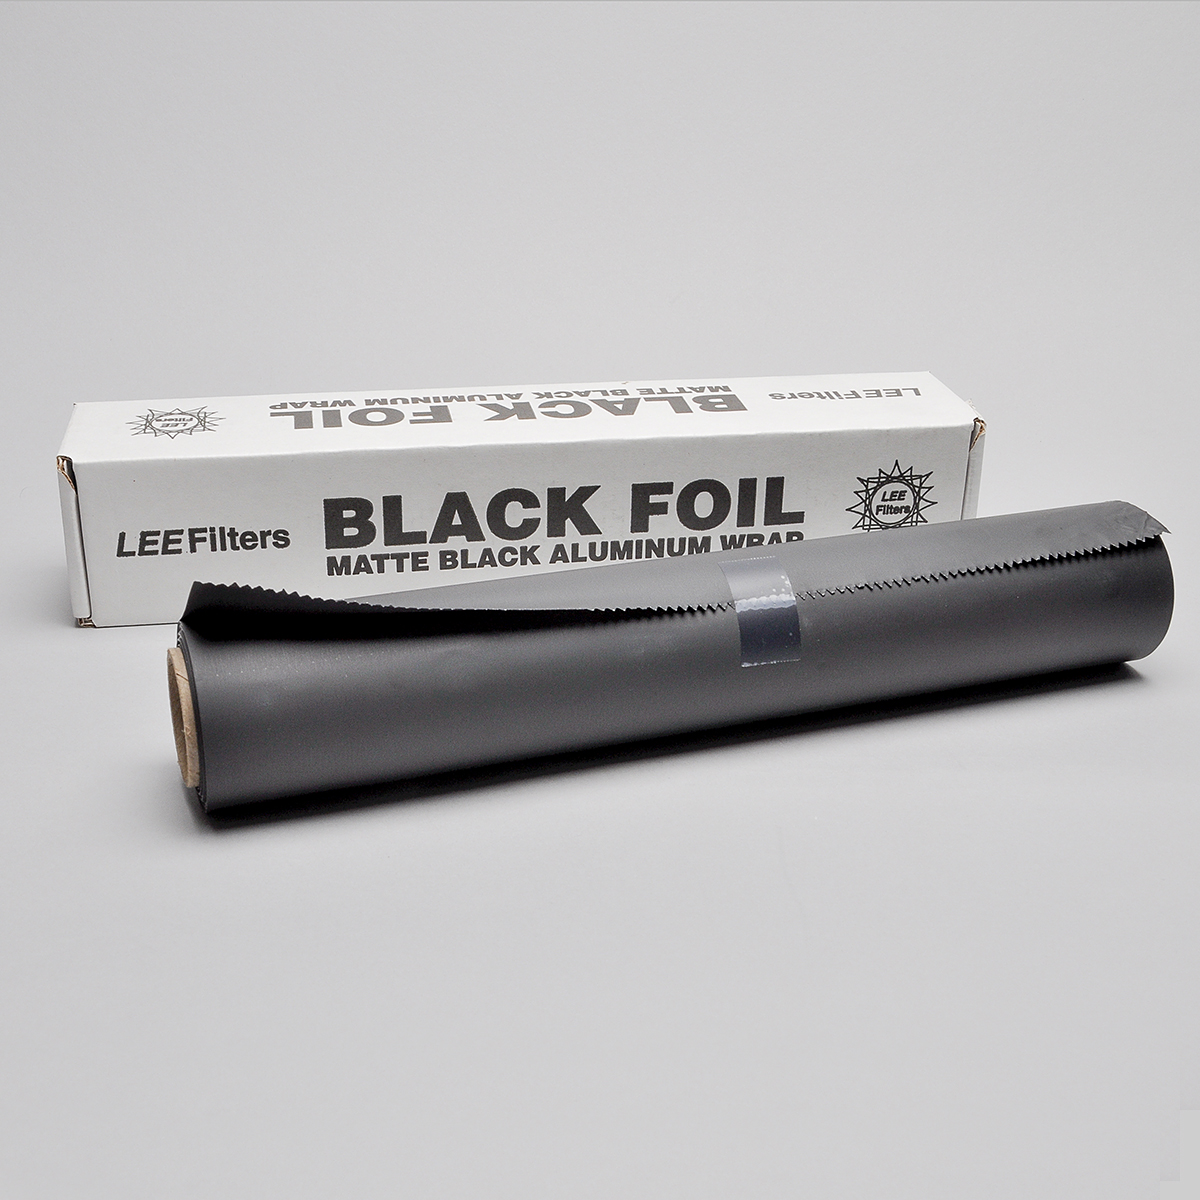 LEE Filters – Black Foil – Beau Photo Supplies Inc.